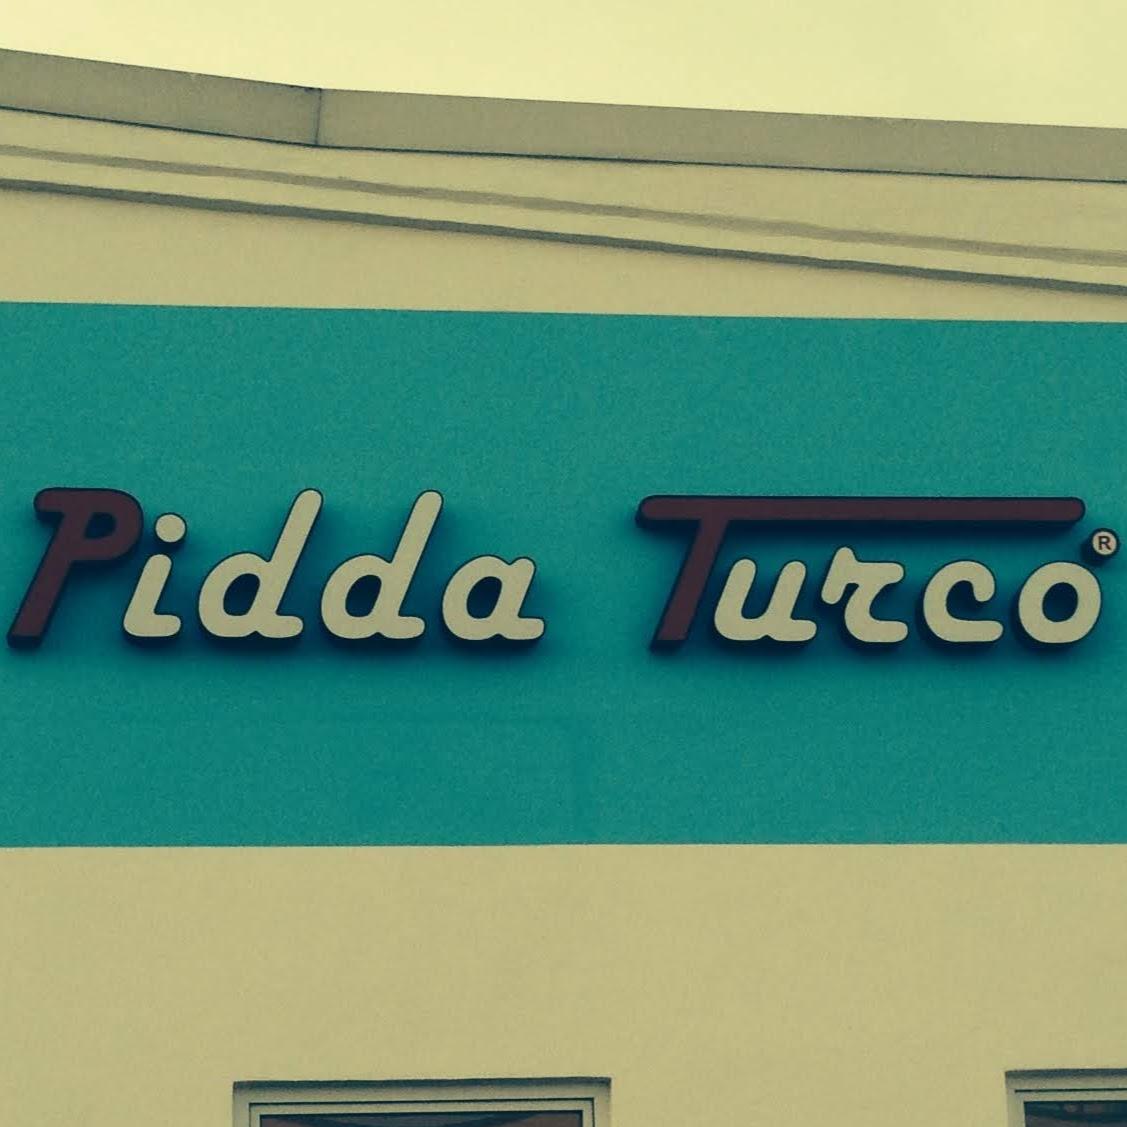 Restaurant "Pidda Turco Pizzalieferservice" in Oranienburg